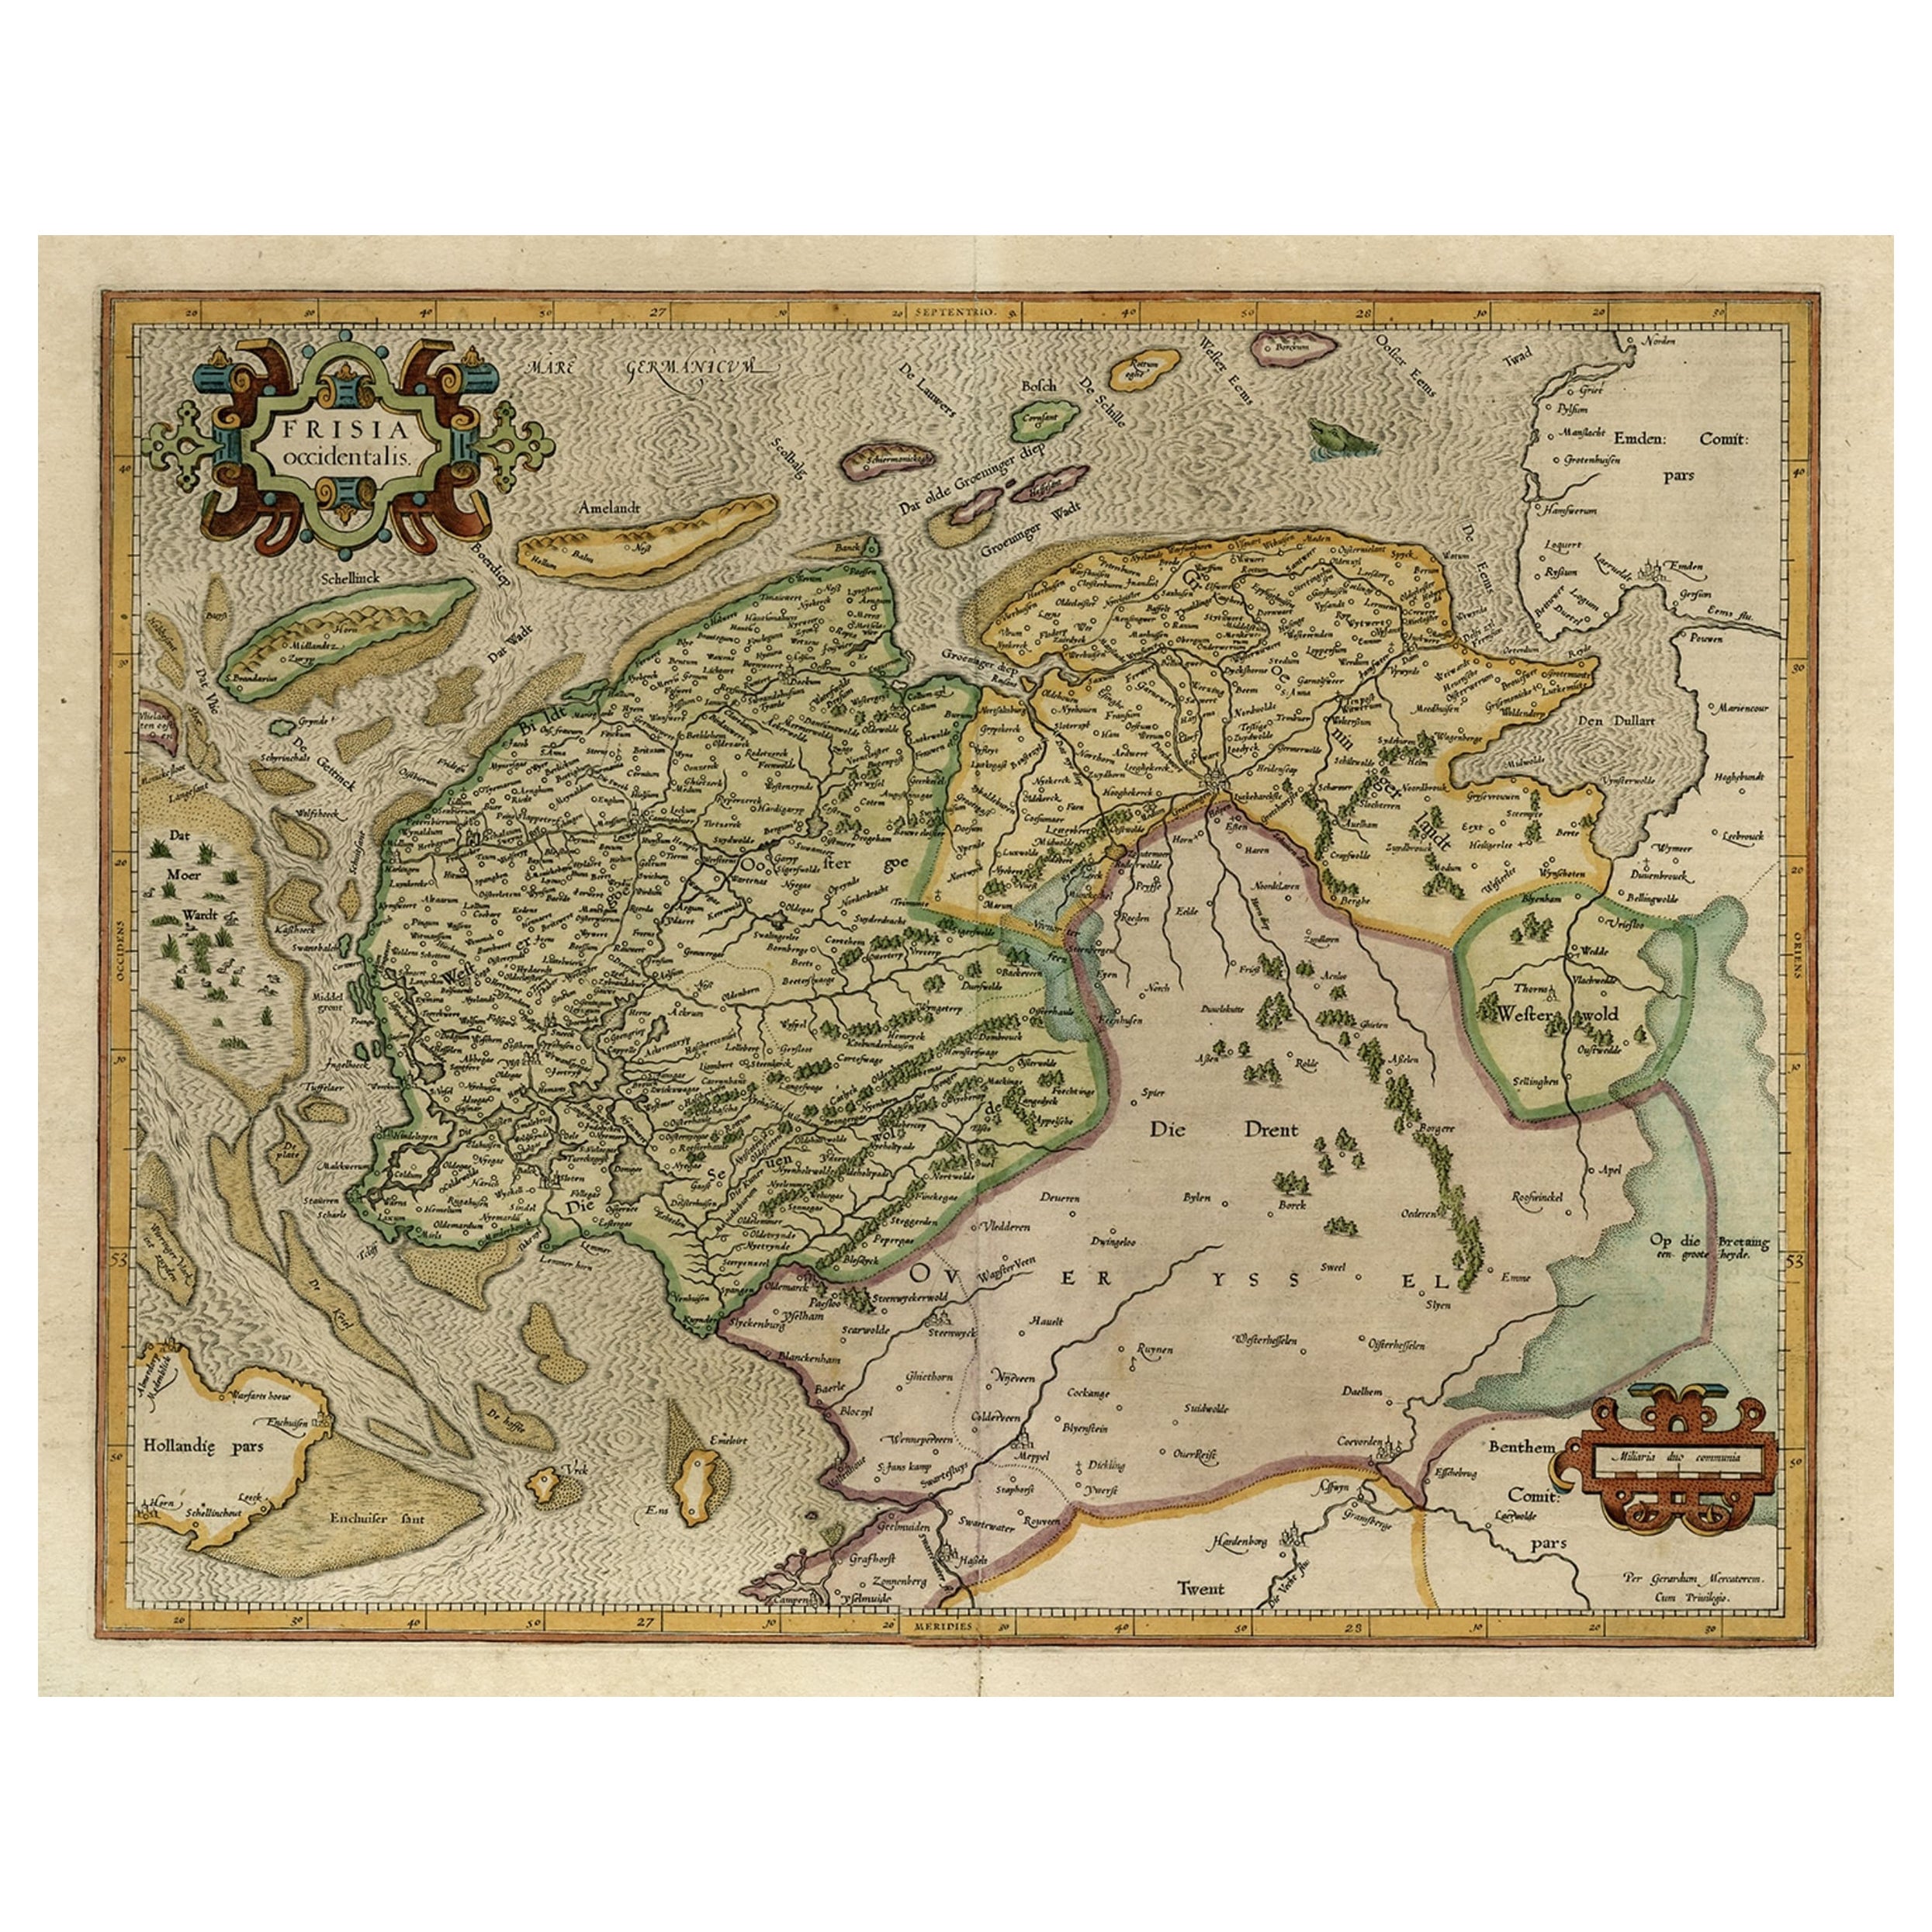 Alte Karte der niederländischen Provinzen Friesland und Groningen, Niederlande, 1604